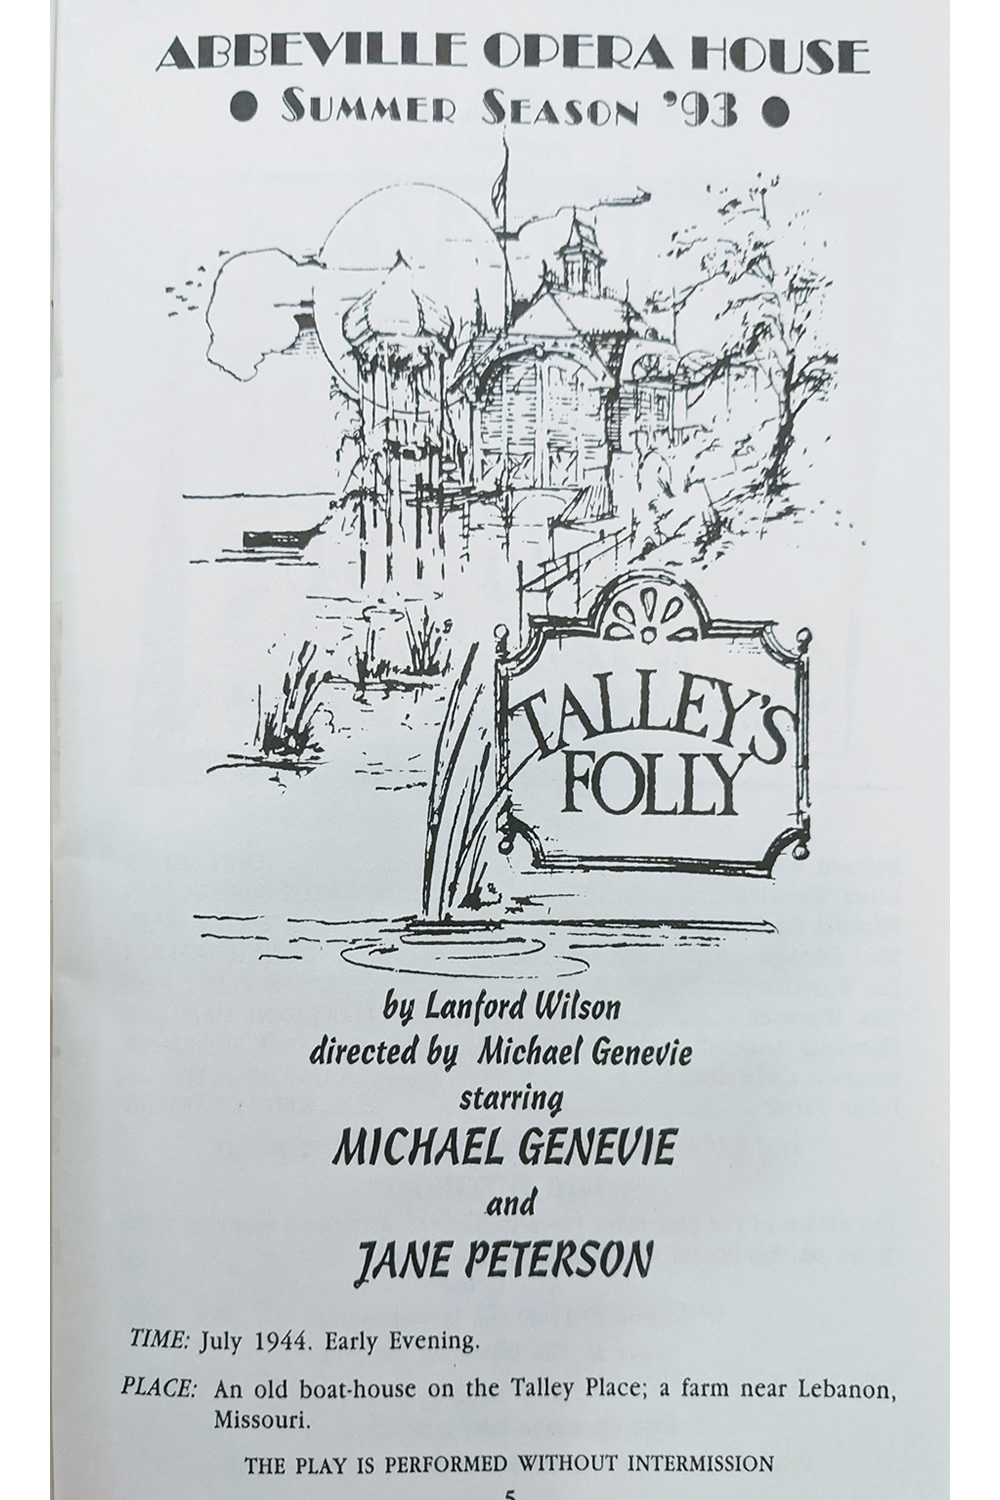 1993 Talley's Folly